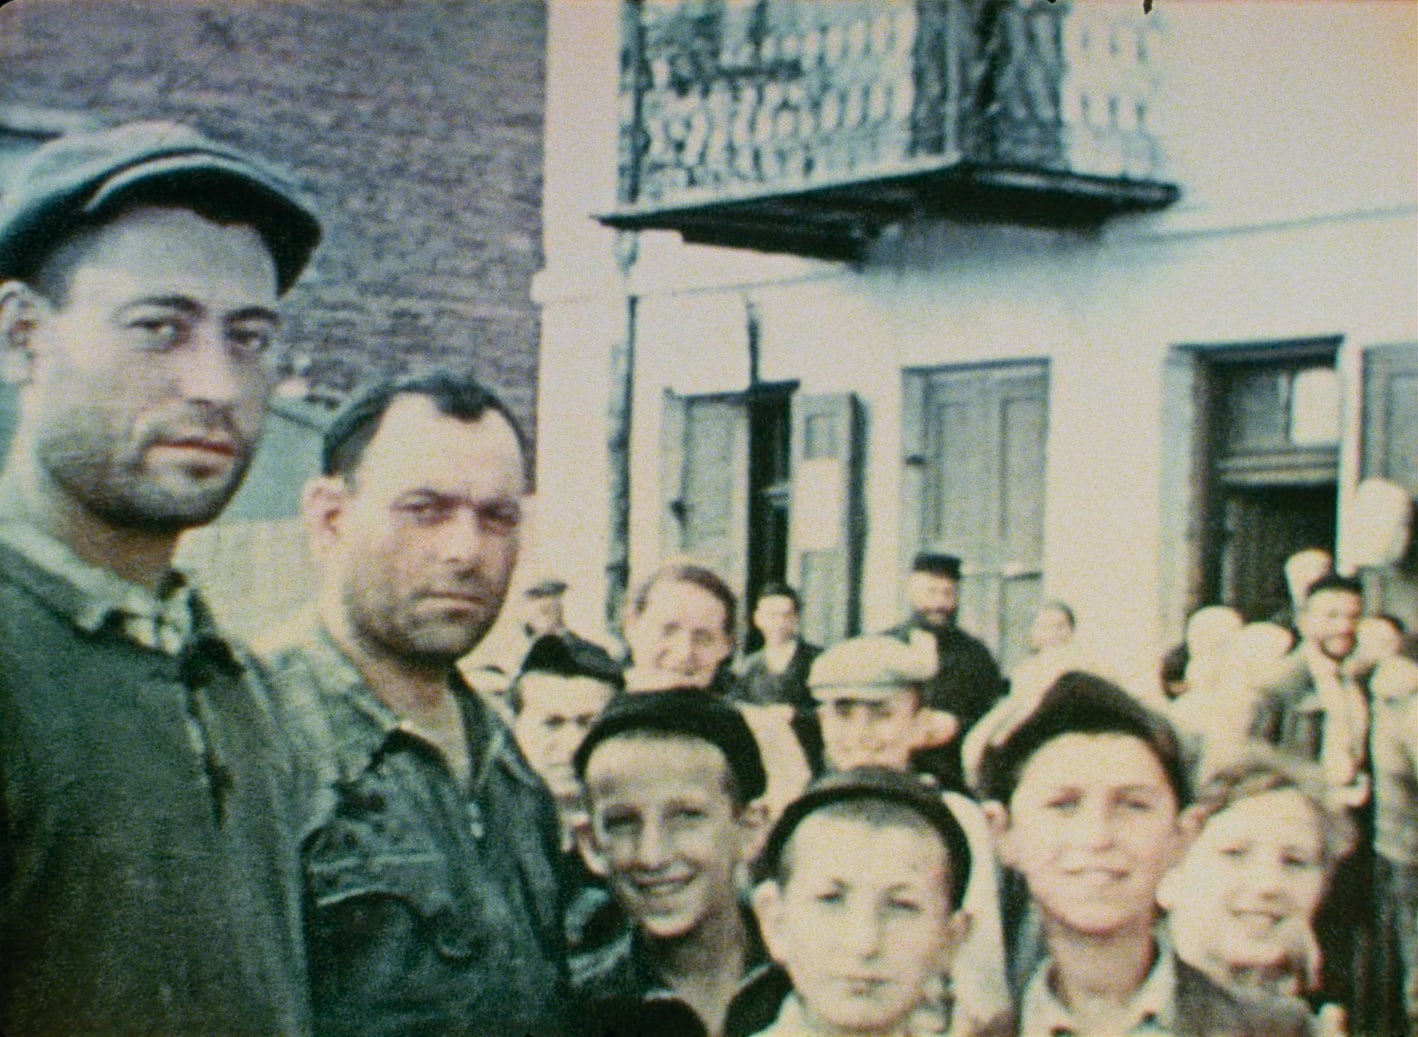 תושבי נאשיילסק ב־1938 (צילום: באדיבות Family Affair Films, כל הזכויות שמורות למוזיאון לזכר השואה)